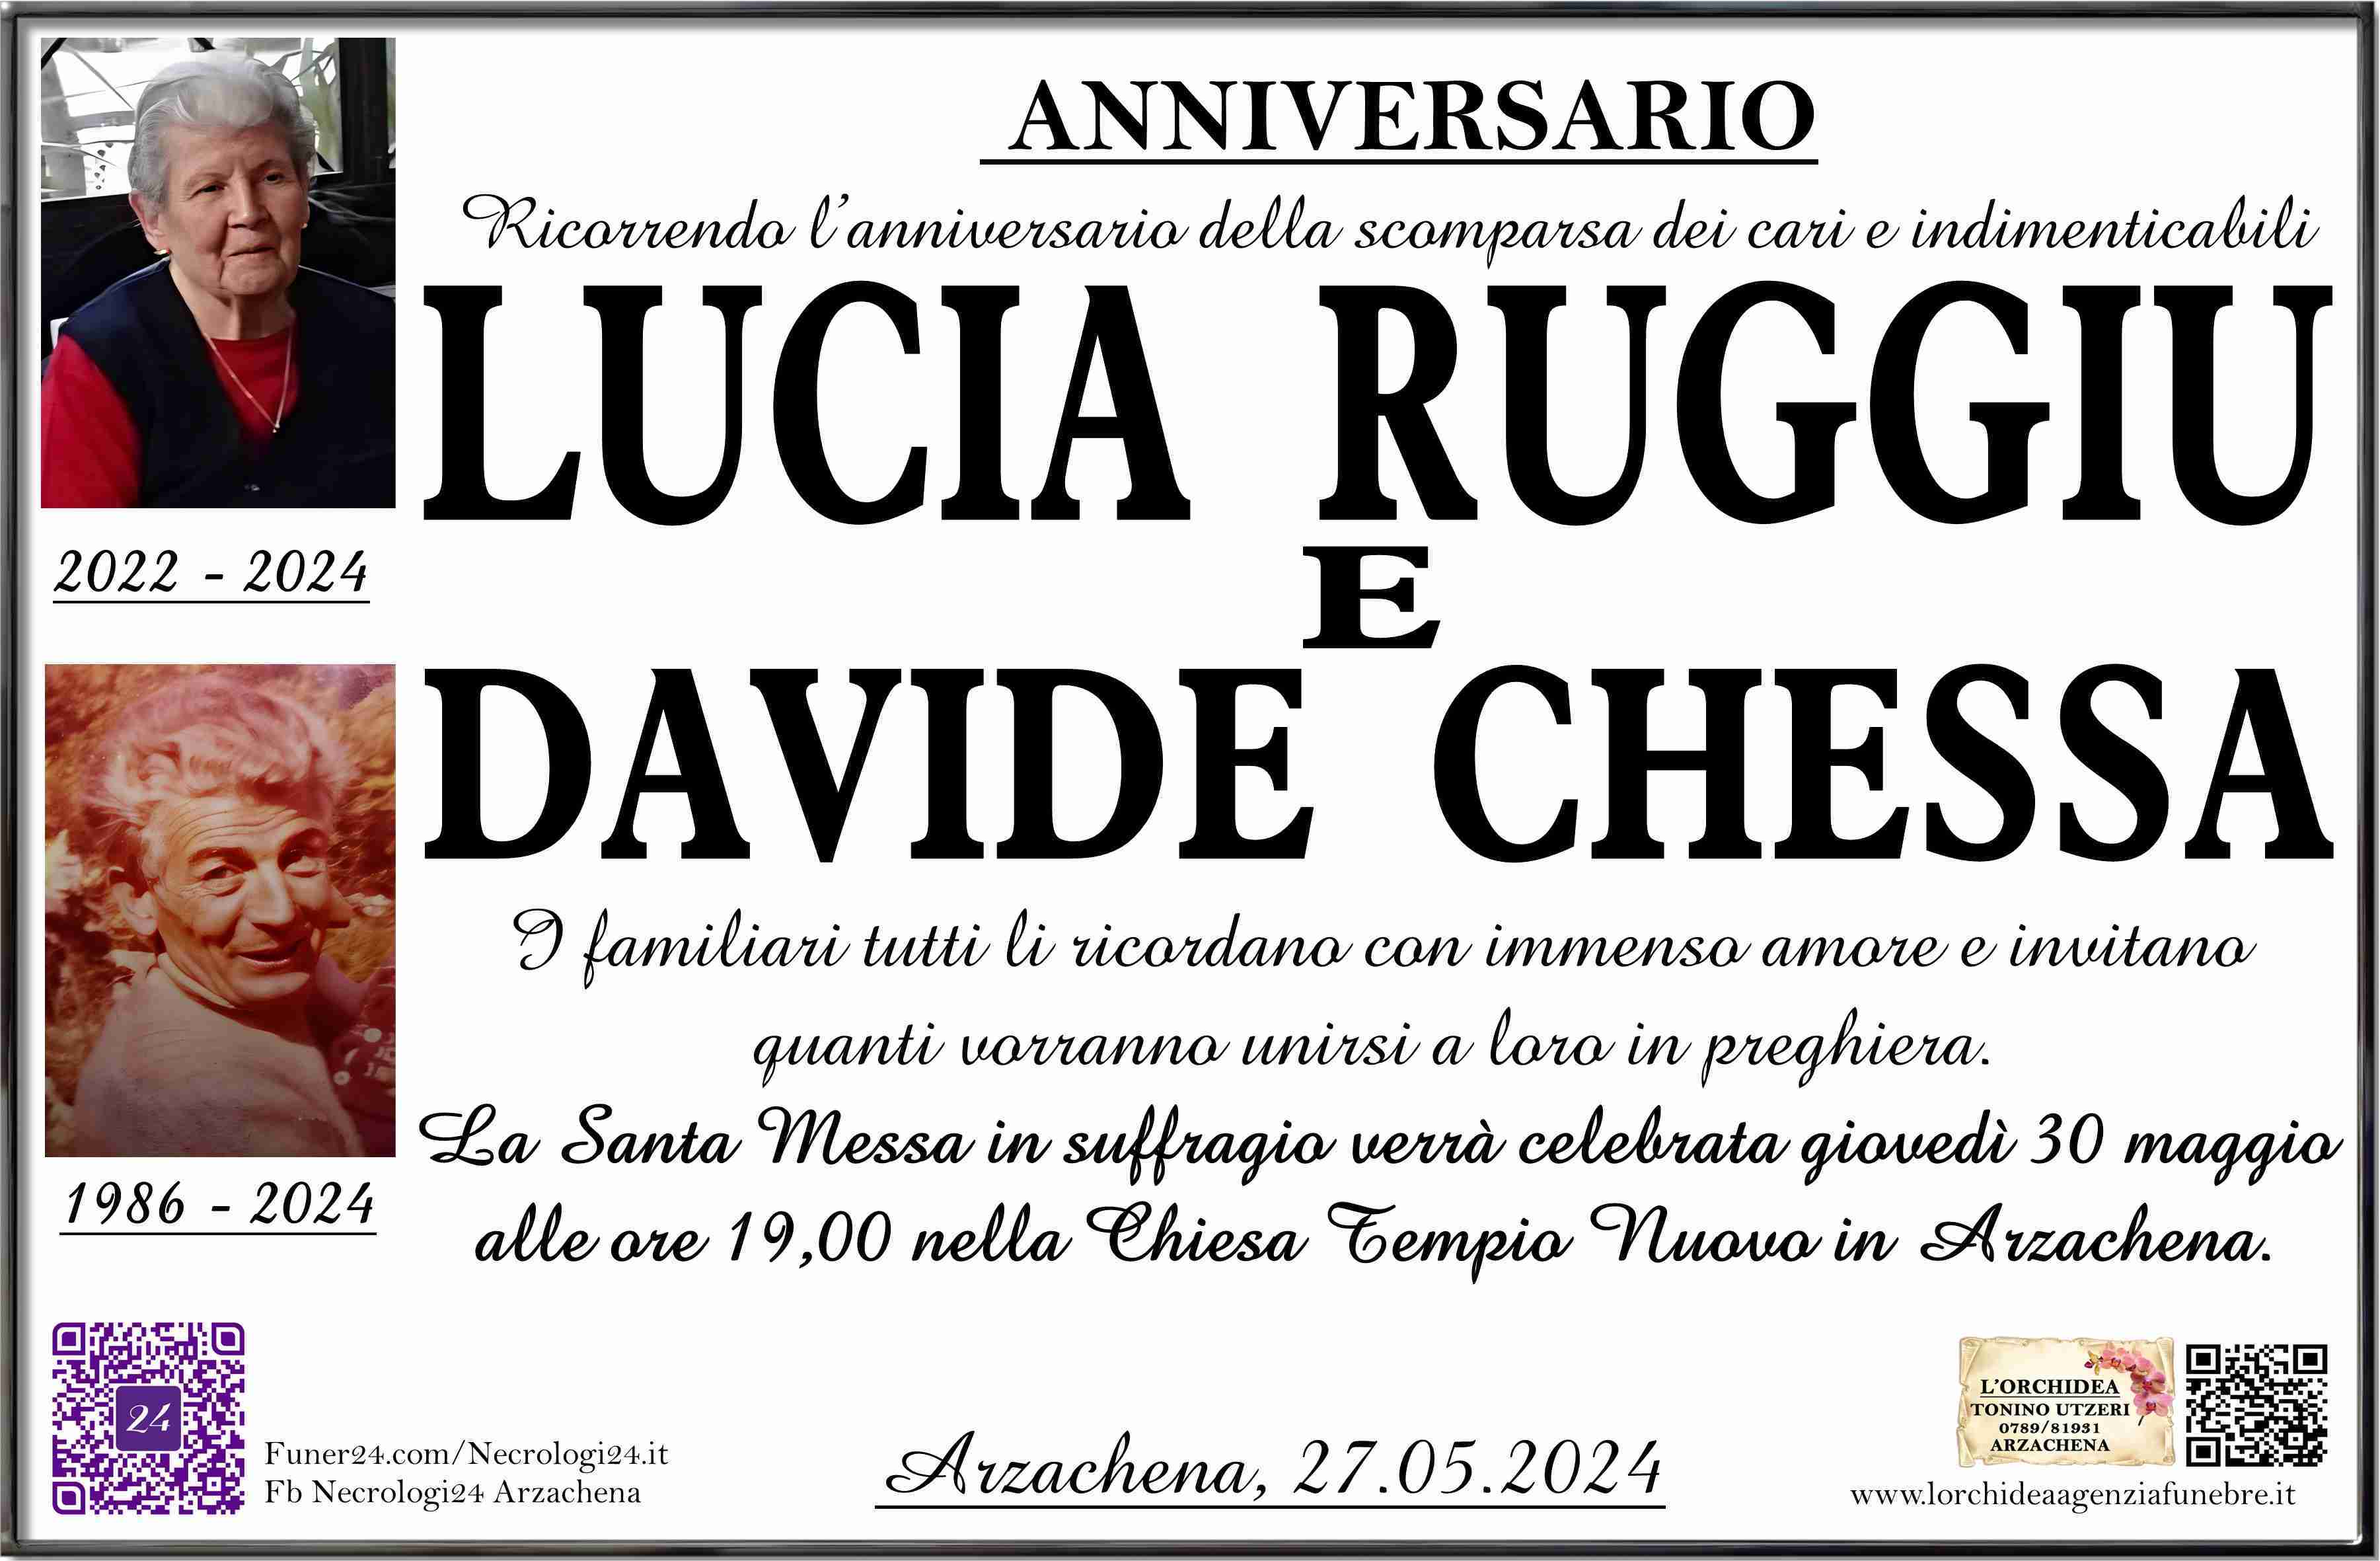 Lucia Ruggiu